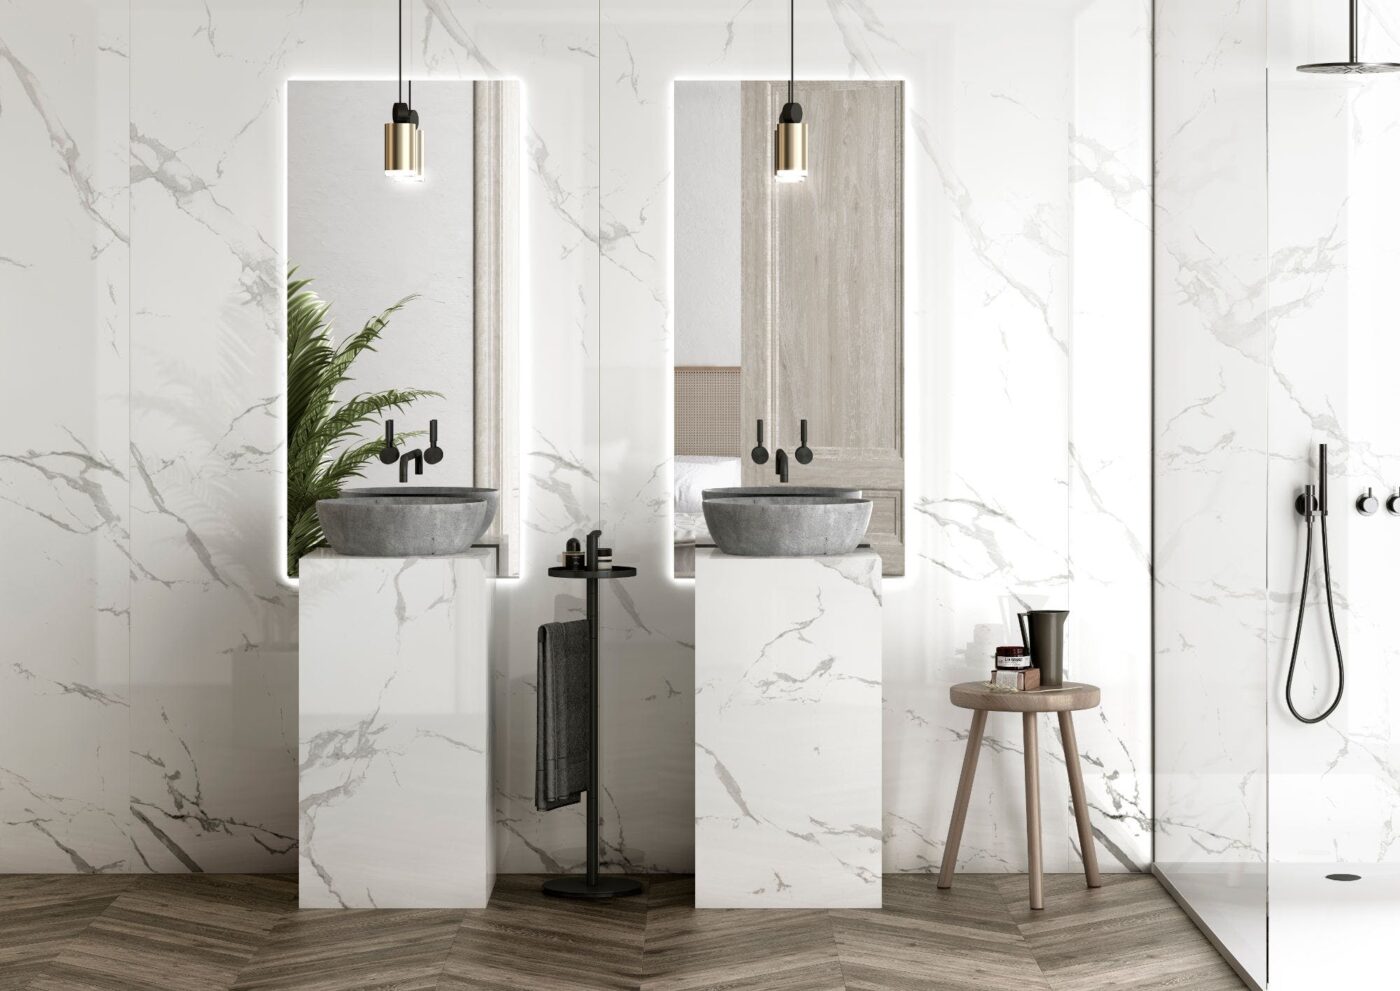 Image 19 of Dekton Bathroom Natura 18 in Five cool design ideas for grey and white bathrooms - Cosentino